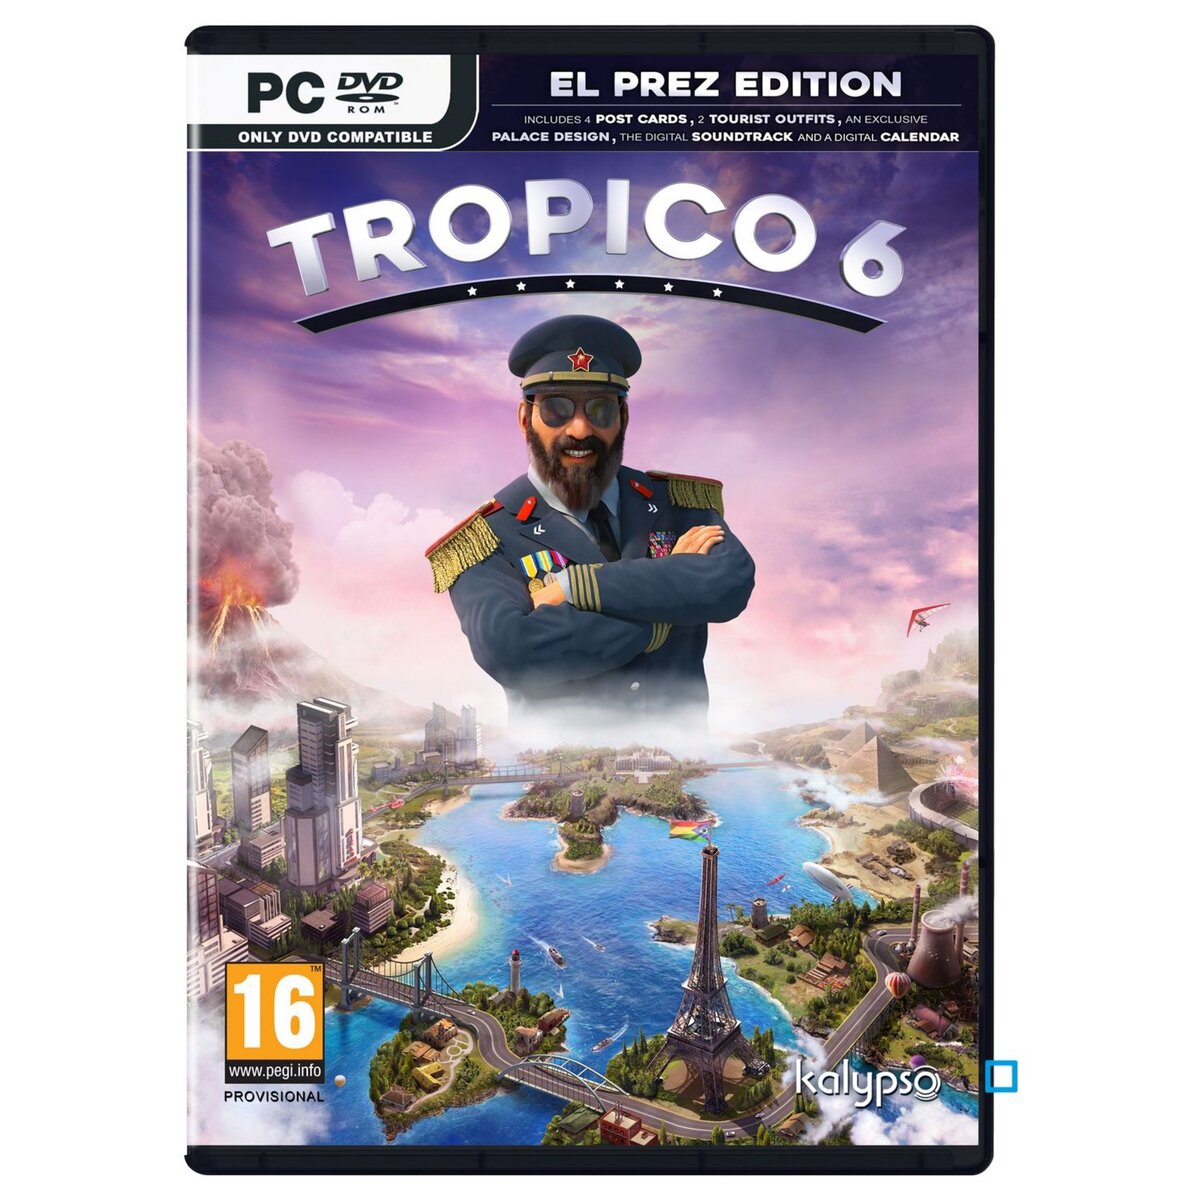 Tropico 6 - Edition El Prez PC